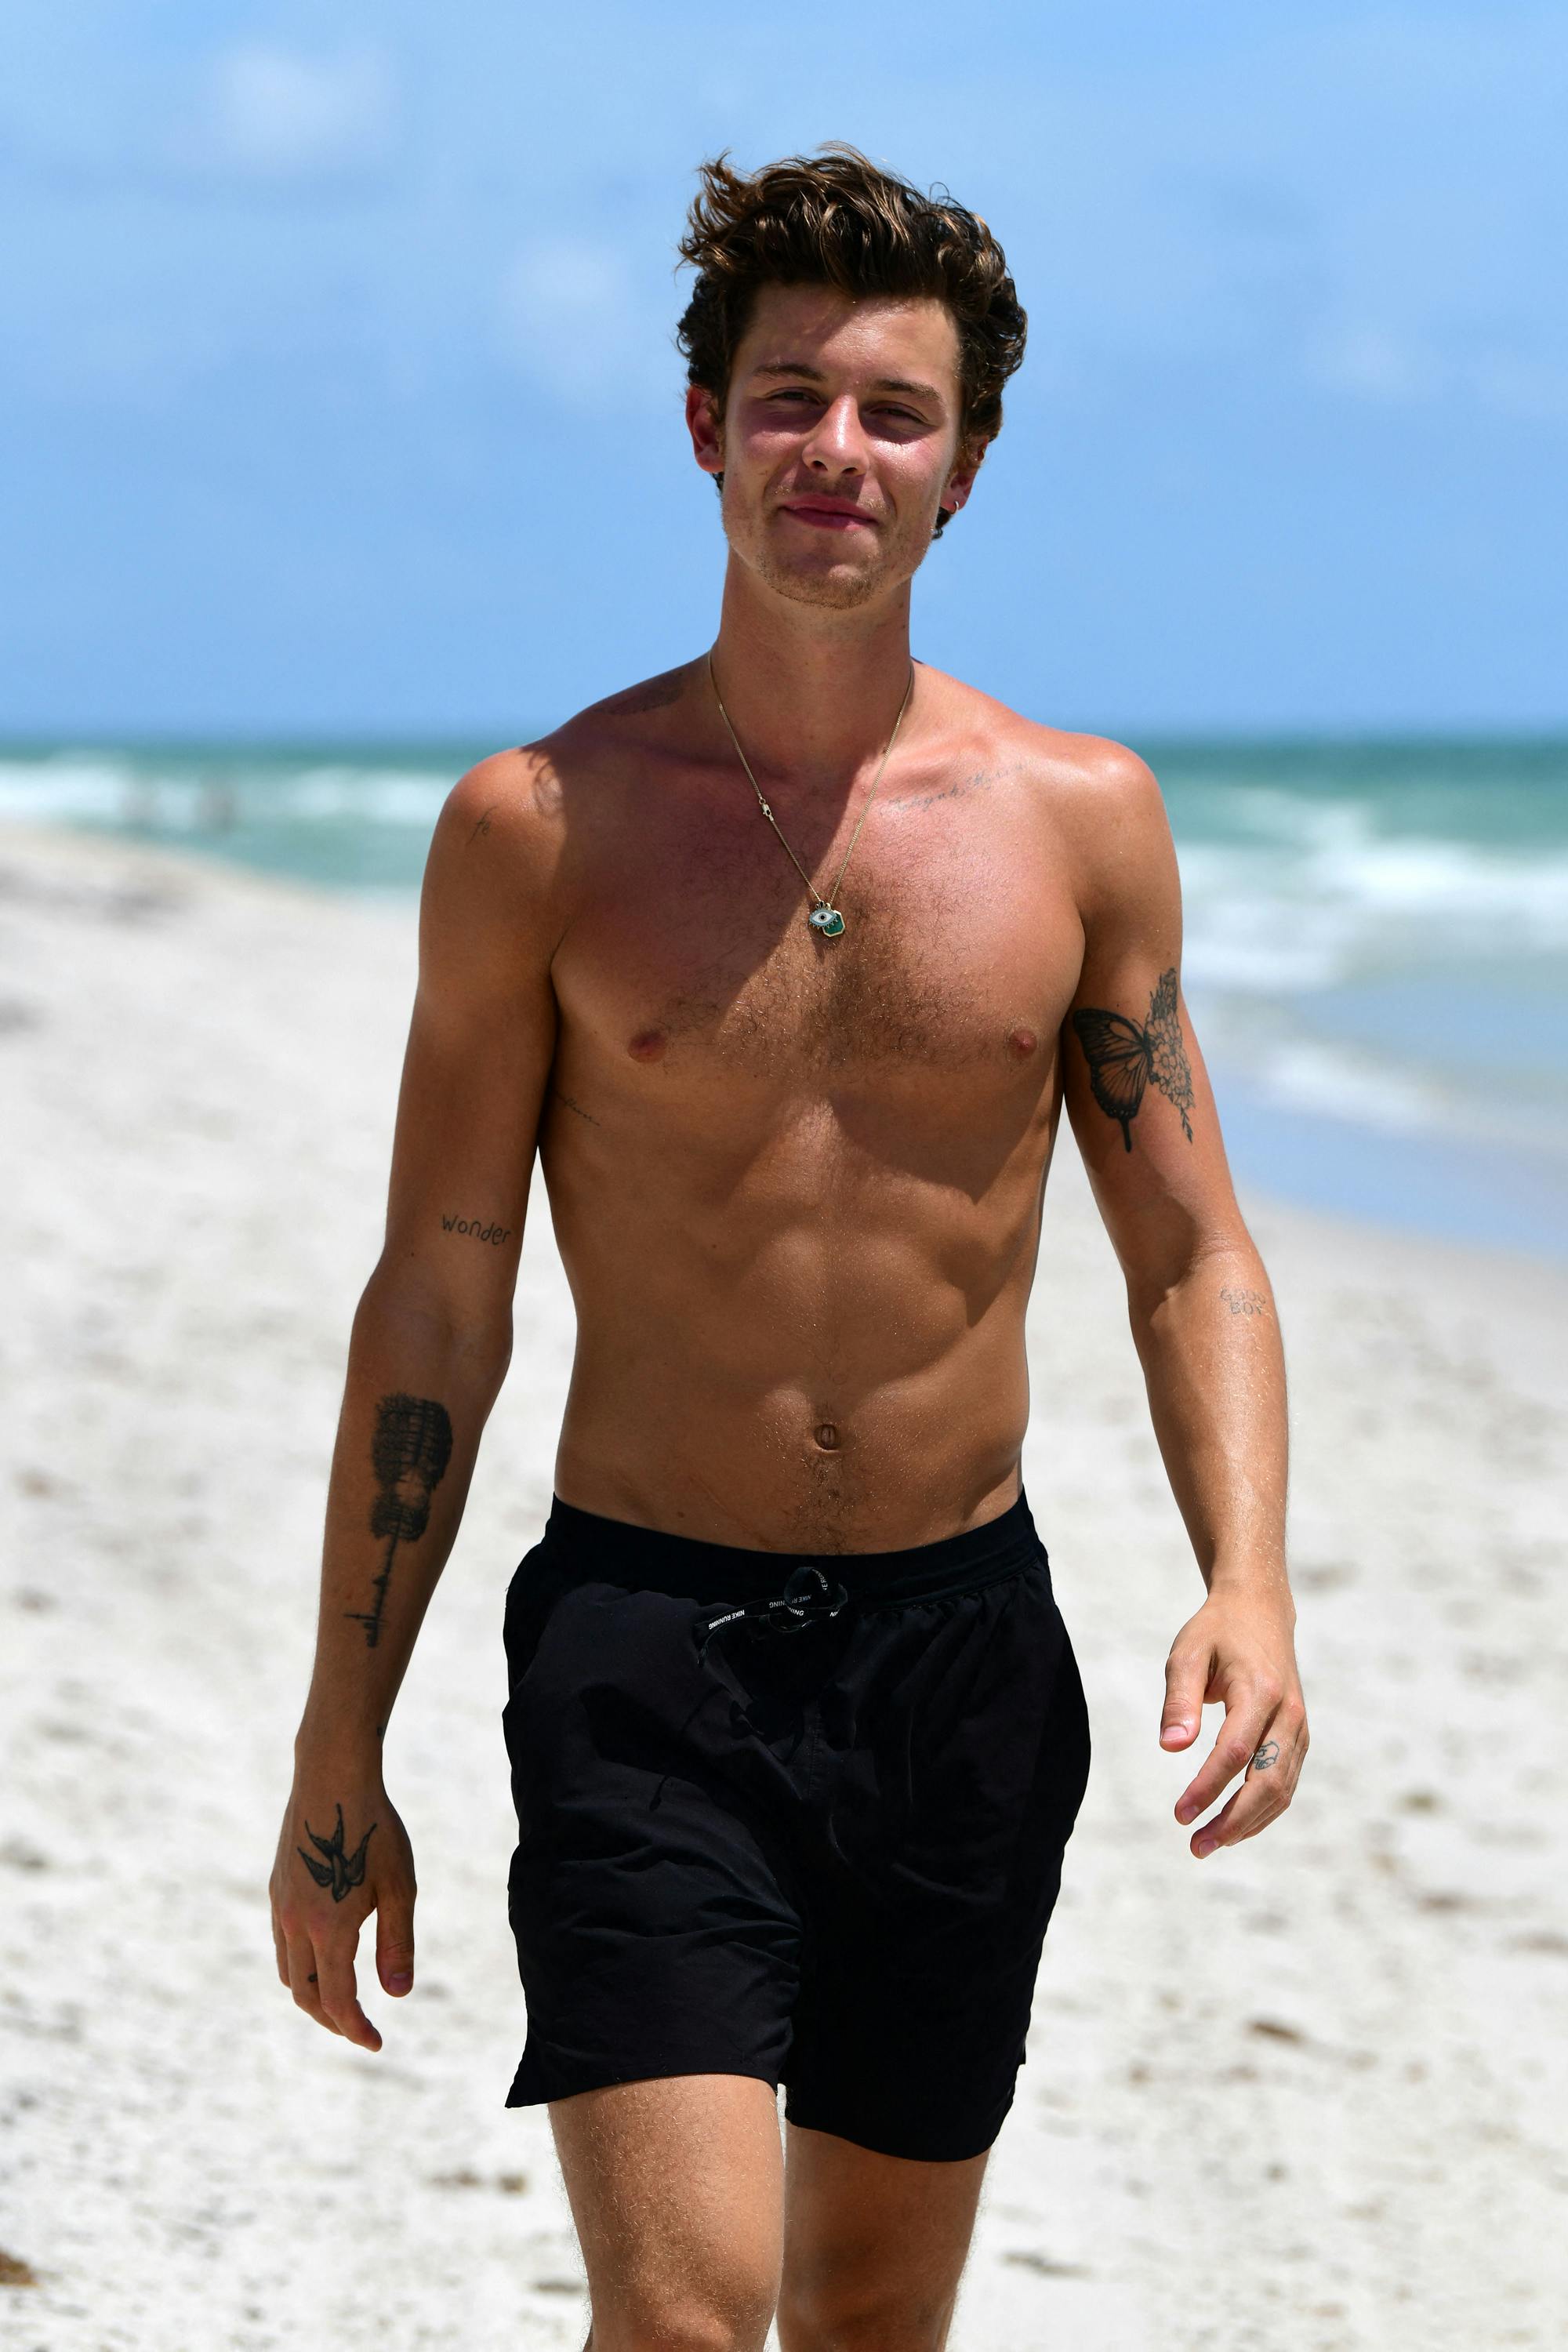 Fotografer fangede Shawn Mendes på stranden, efter han havde aflyst sine koncerter.
